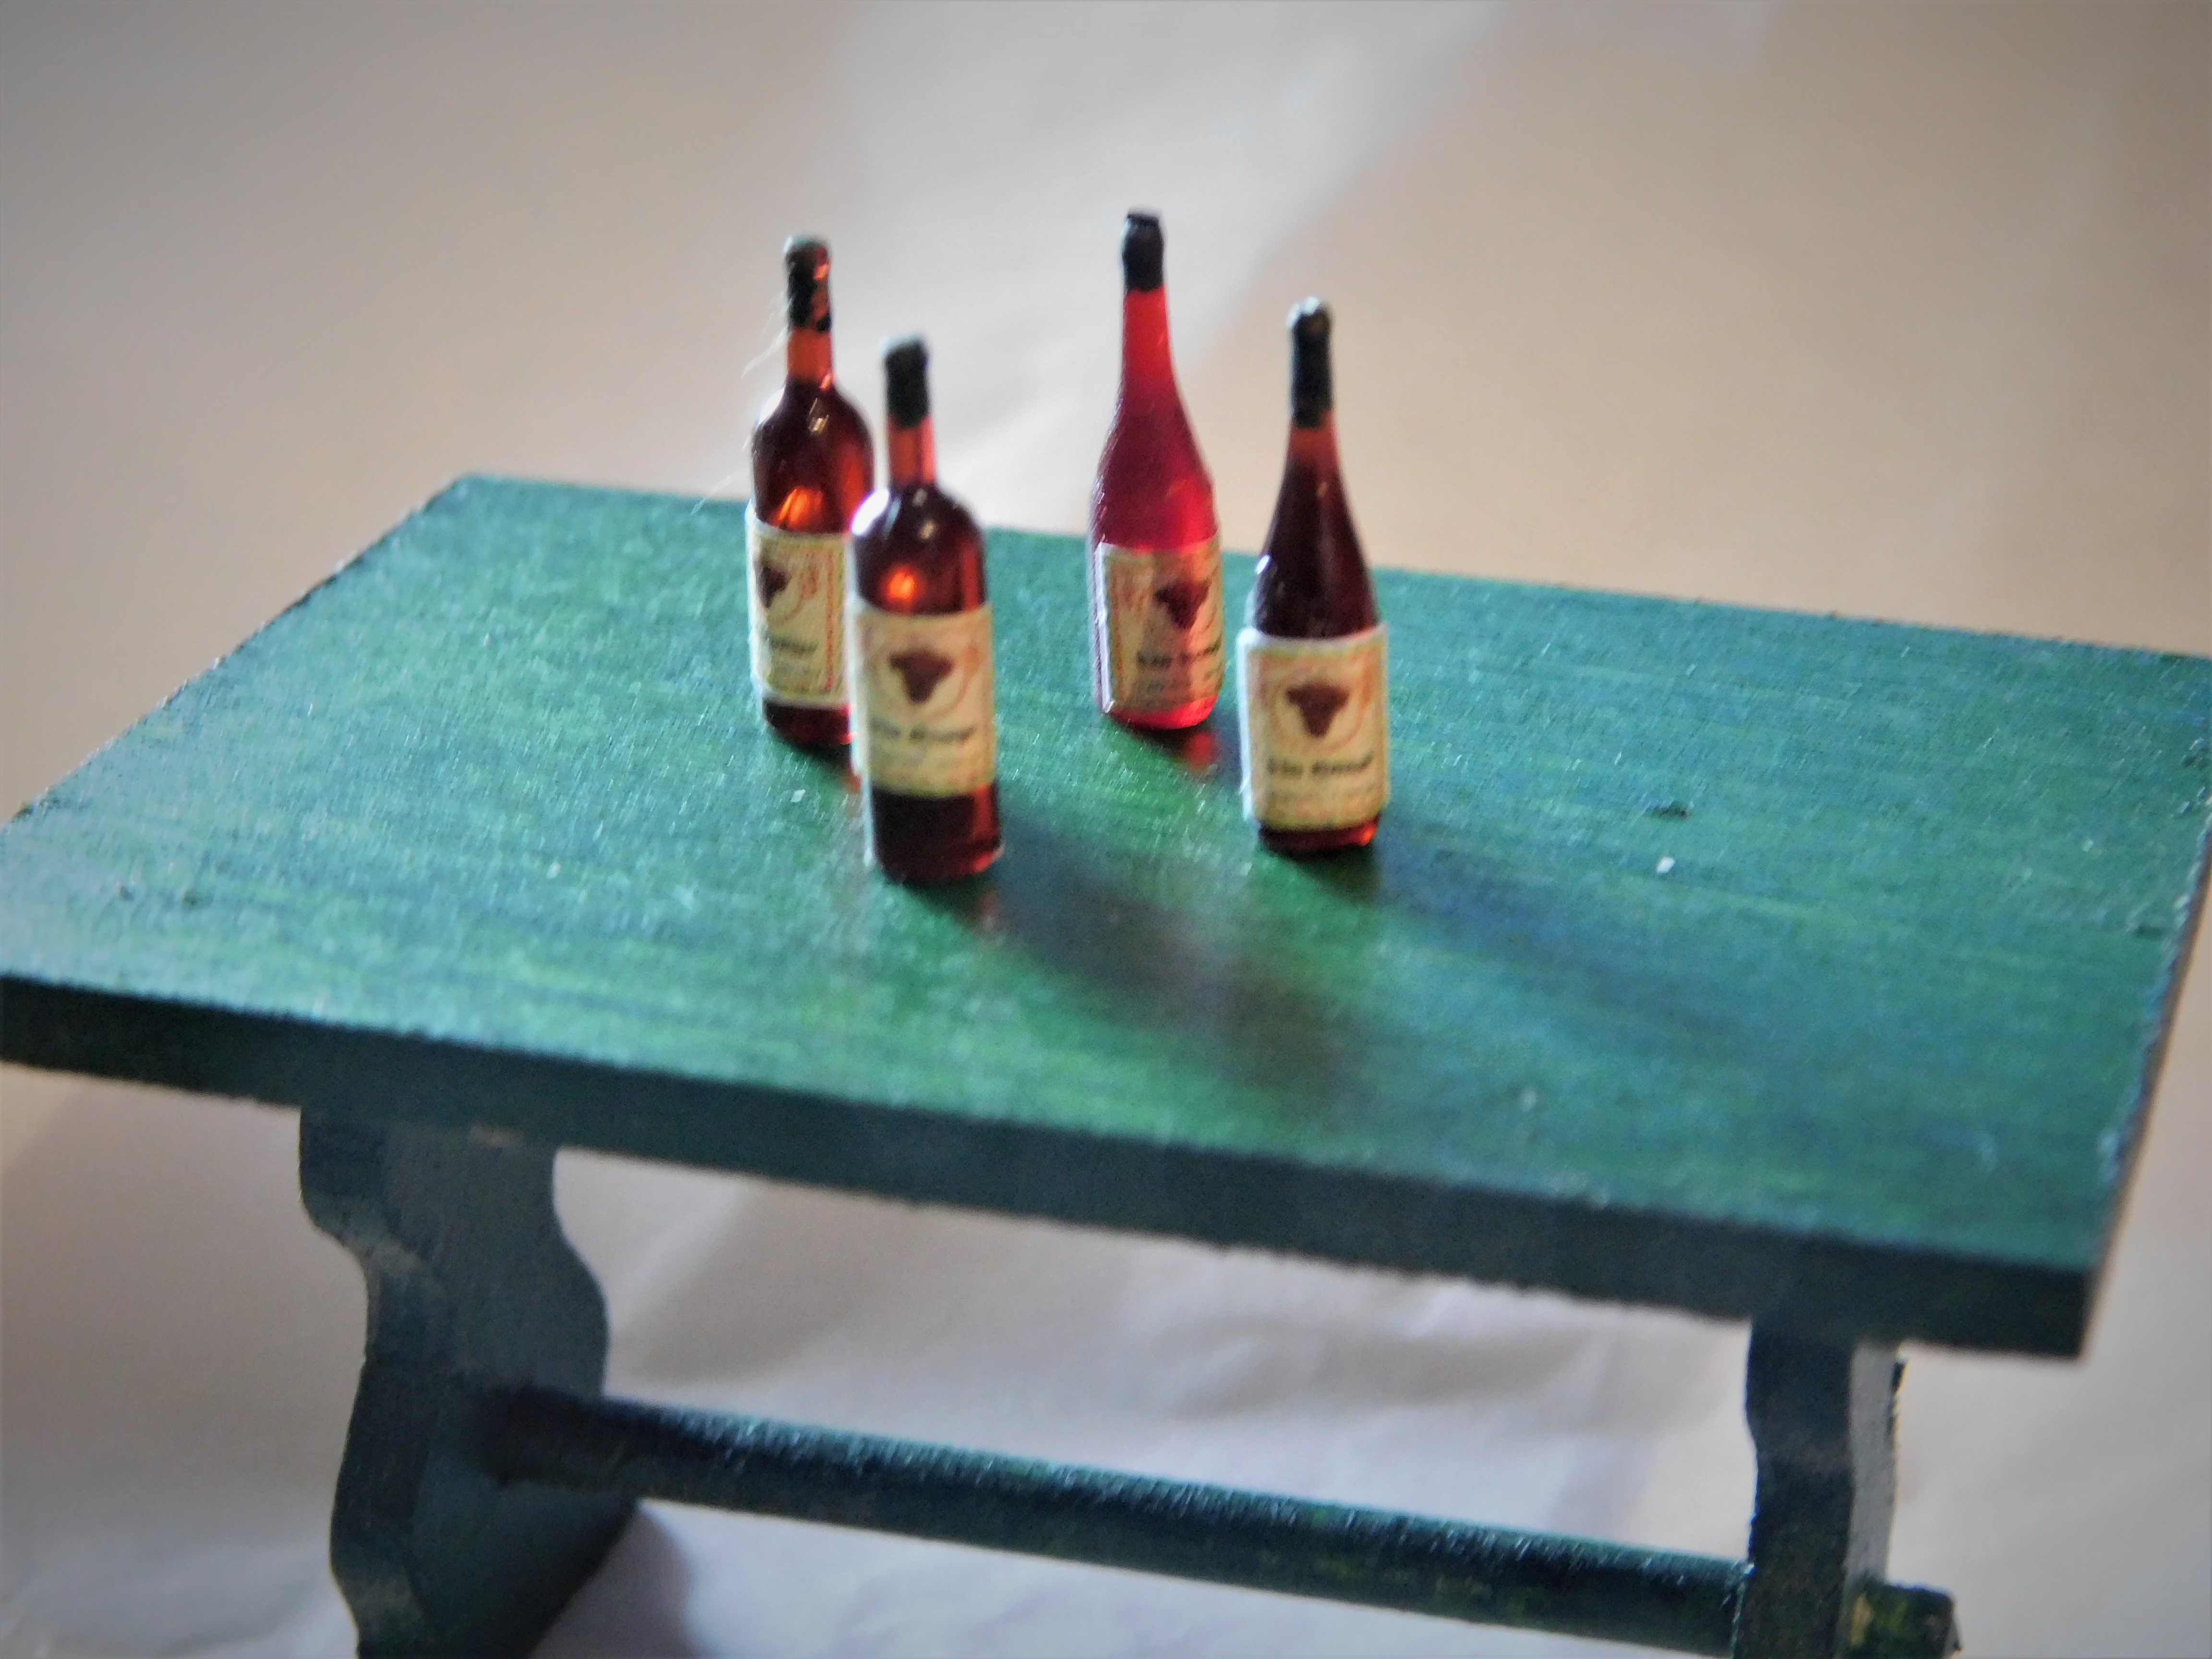 Bouteille de vin miniature au meilleur prix quantité 18, 7 cl rouge